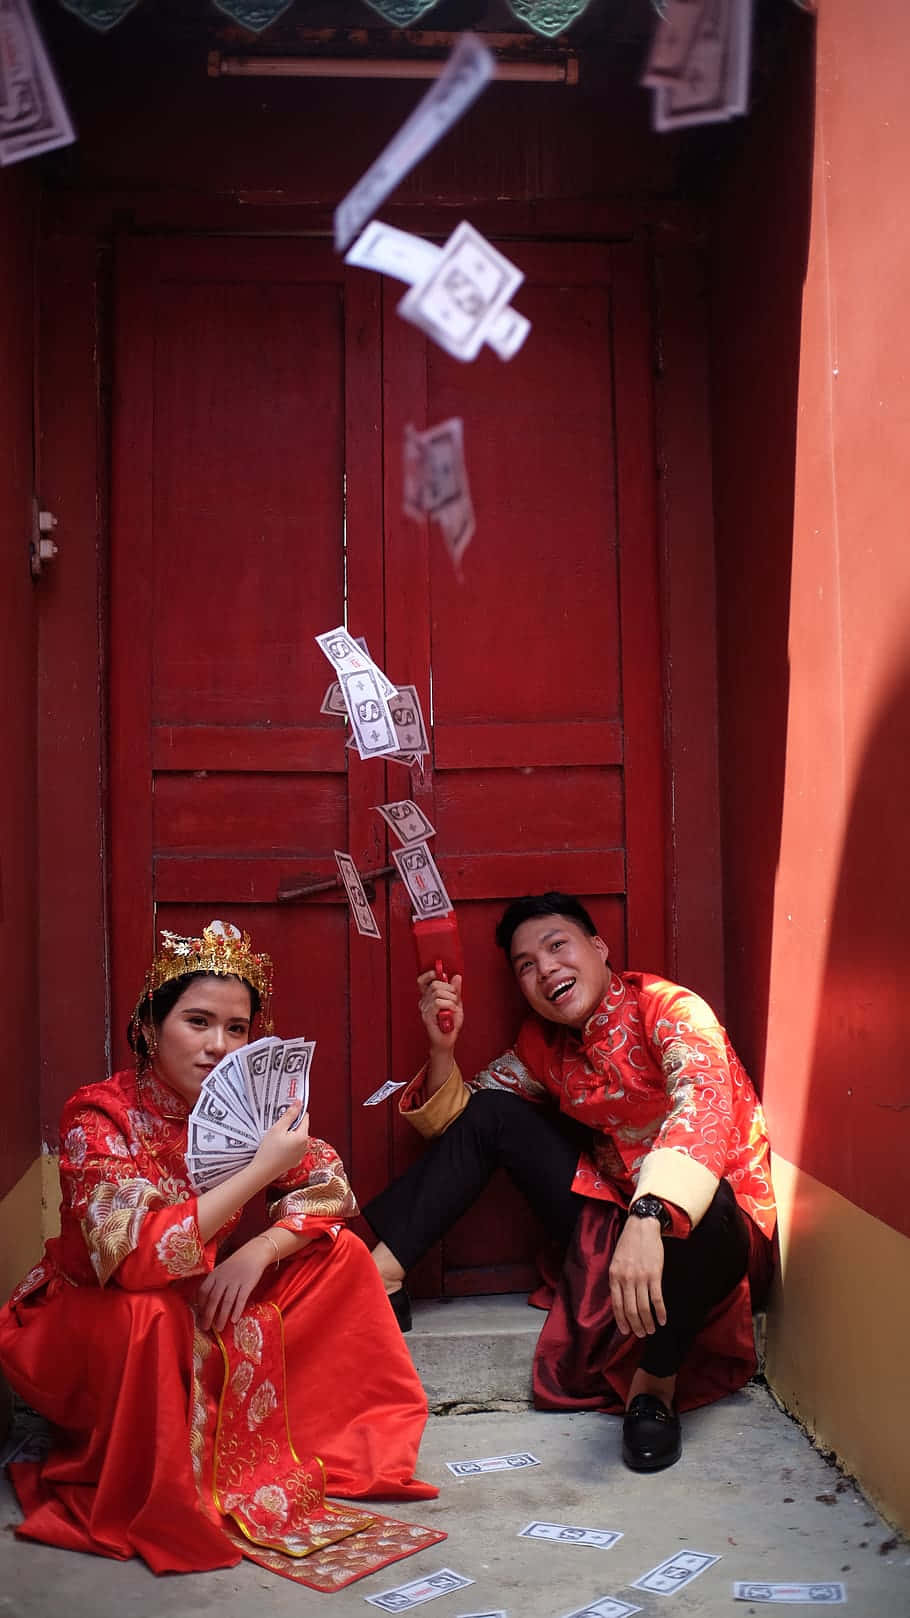 Imagendivertida De Una Pareja China Usando Trajes Rojos Y Rodeada De Dinero.